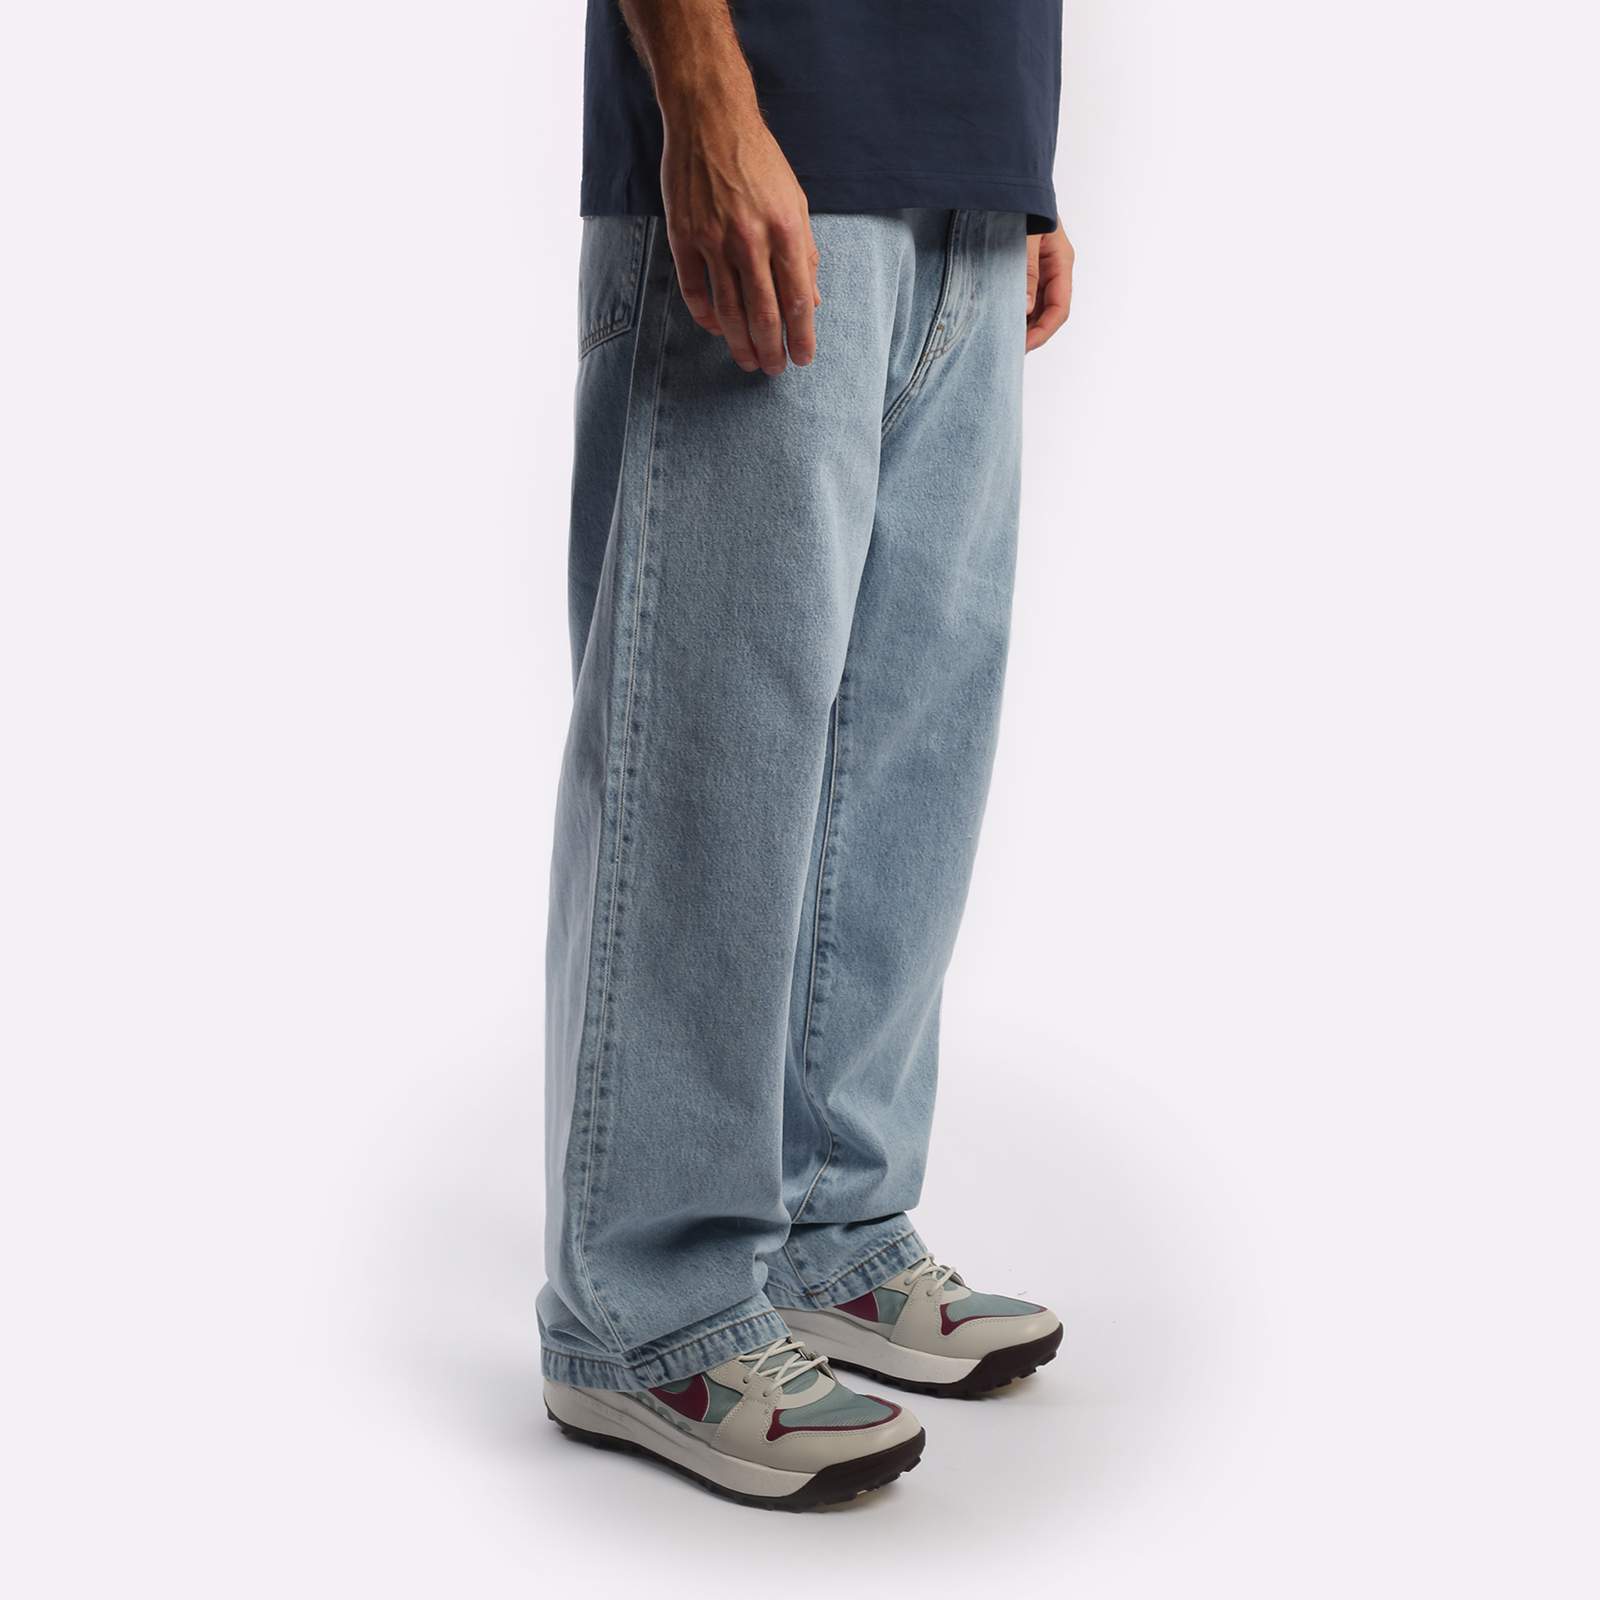 мужские брюки Carhartt WIP Robertson  (I030468-blue)  - цена, описание, фото 5